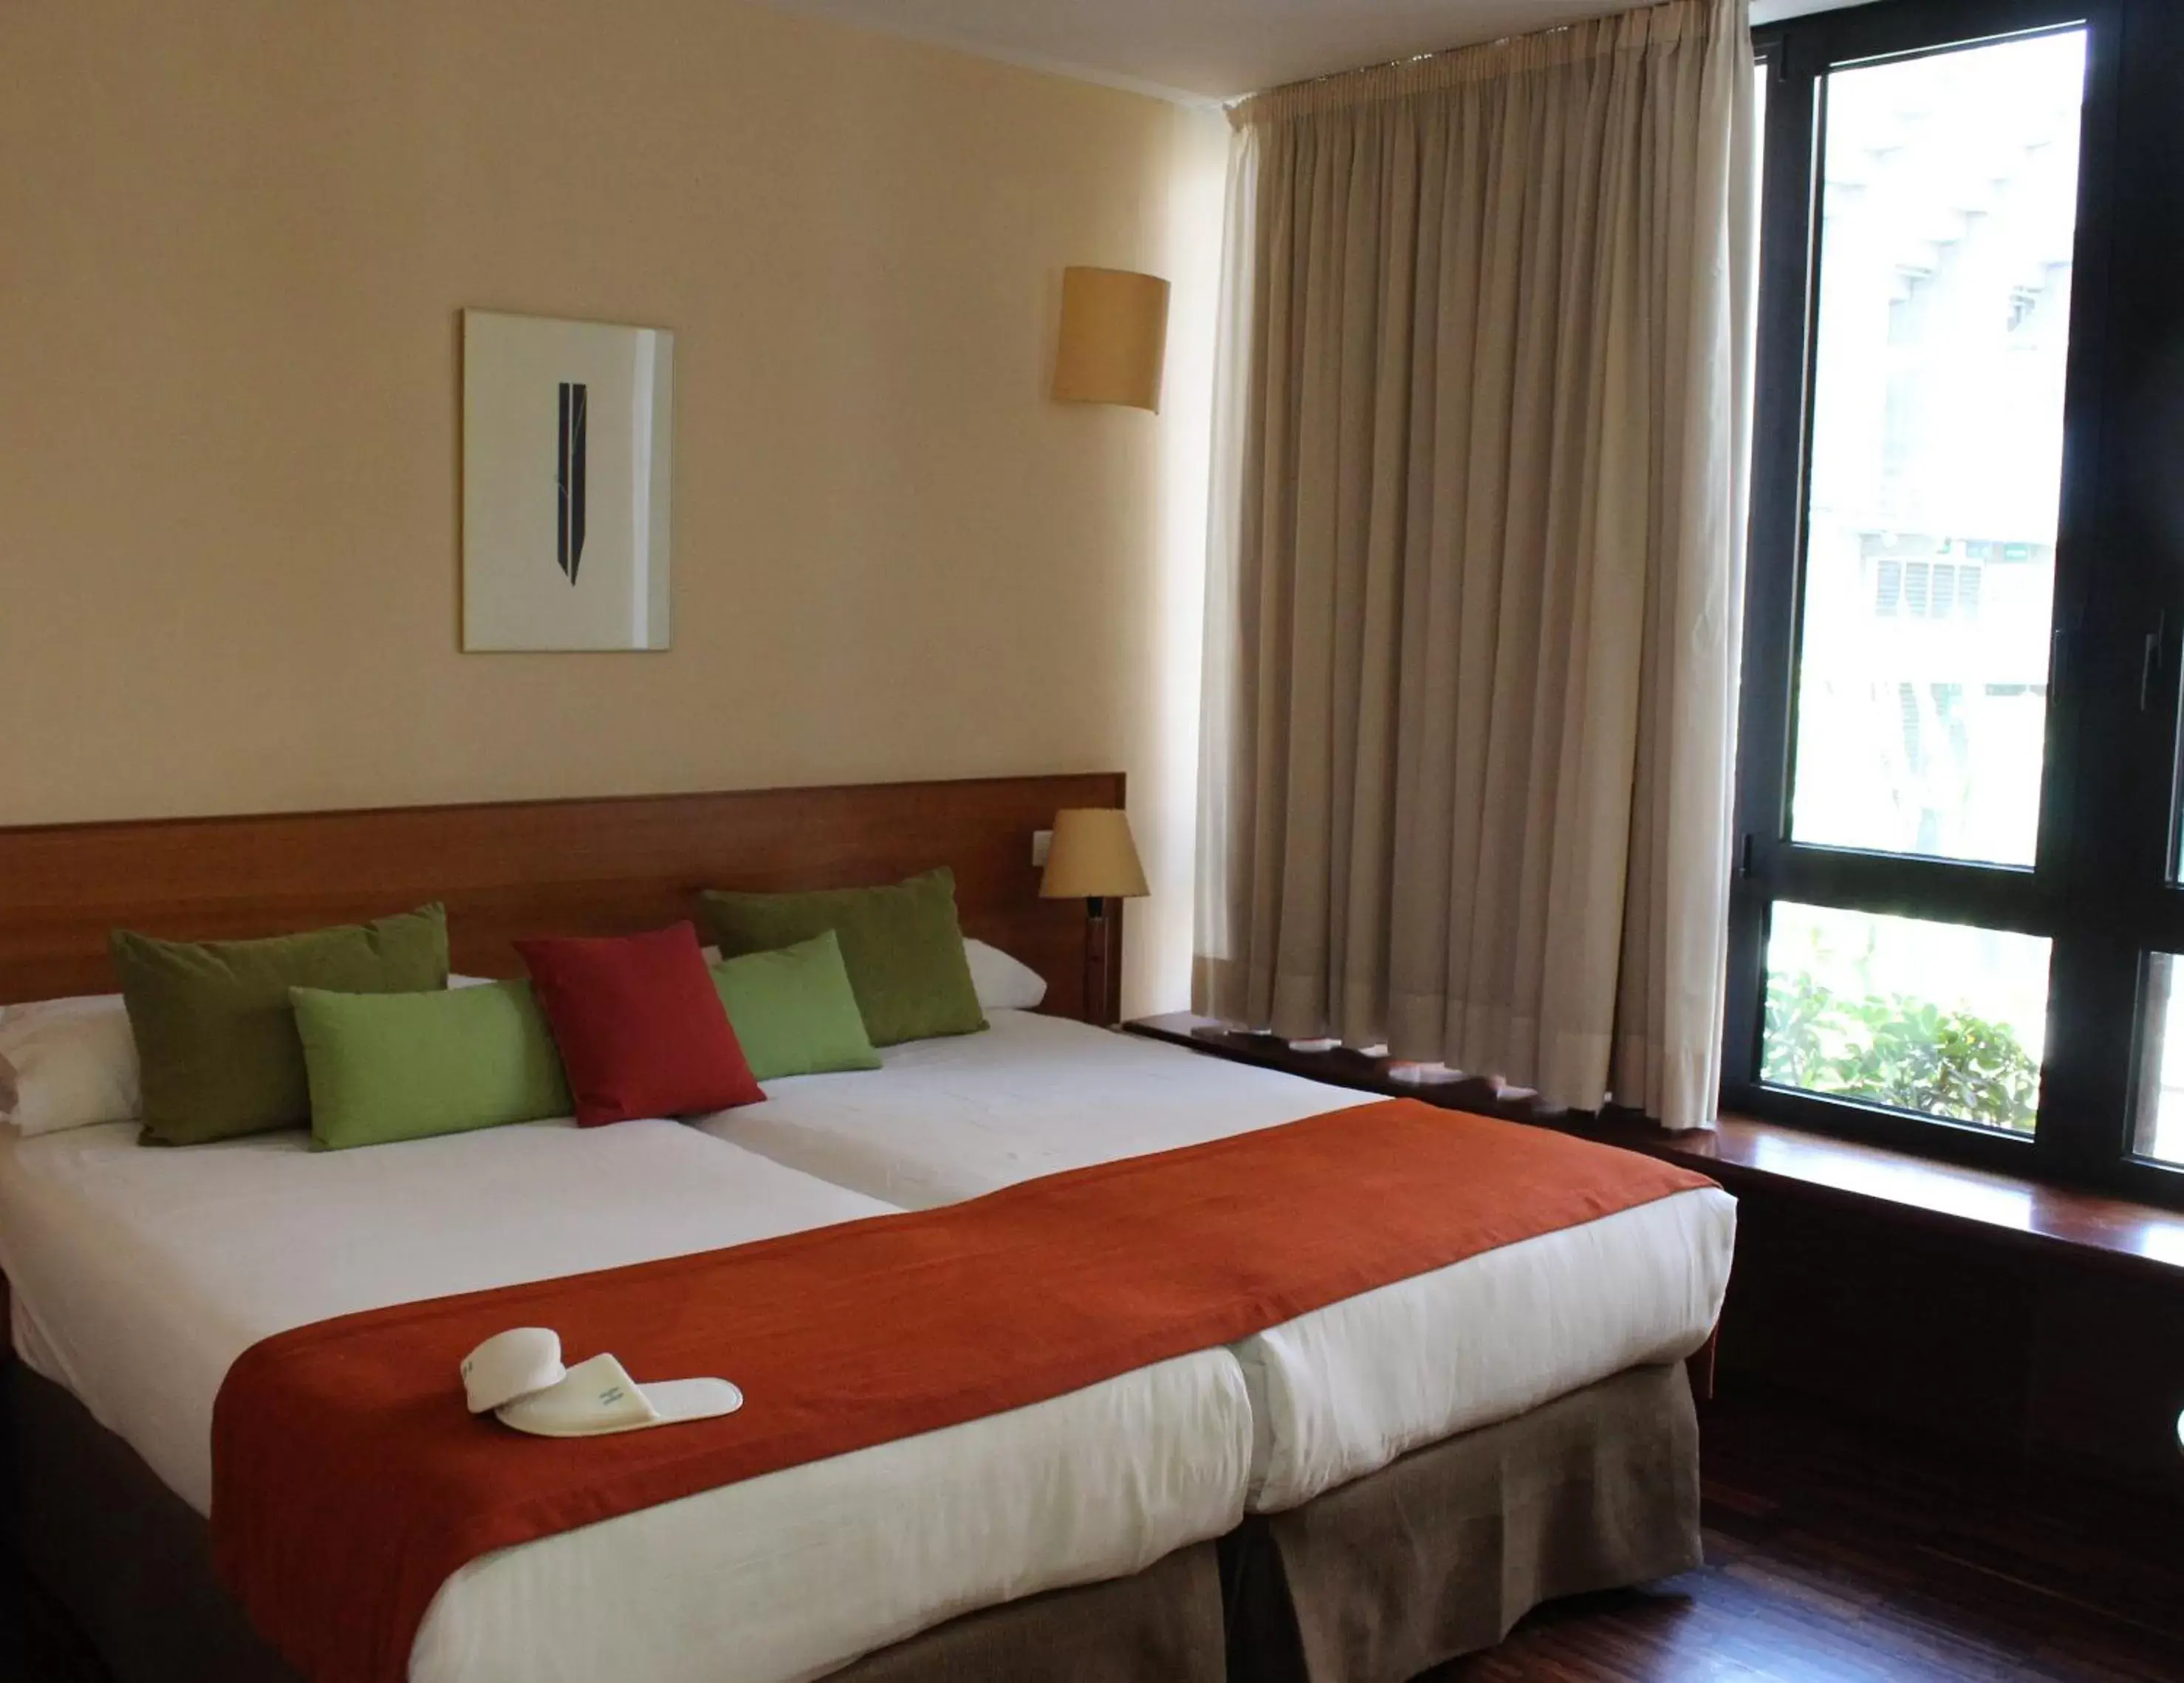 Bed, Room Photo in Hotel Escuela Santa Cruz